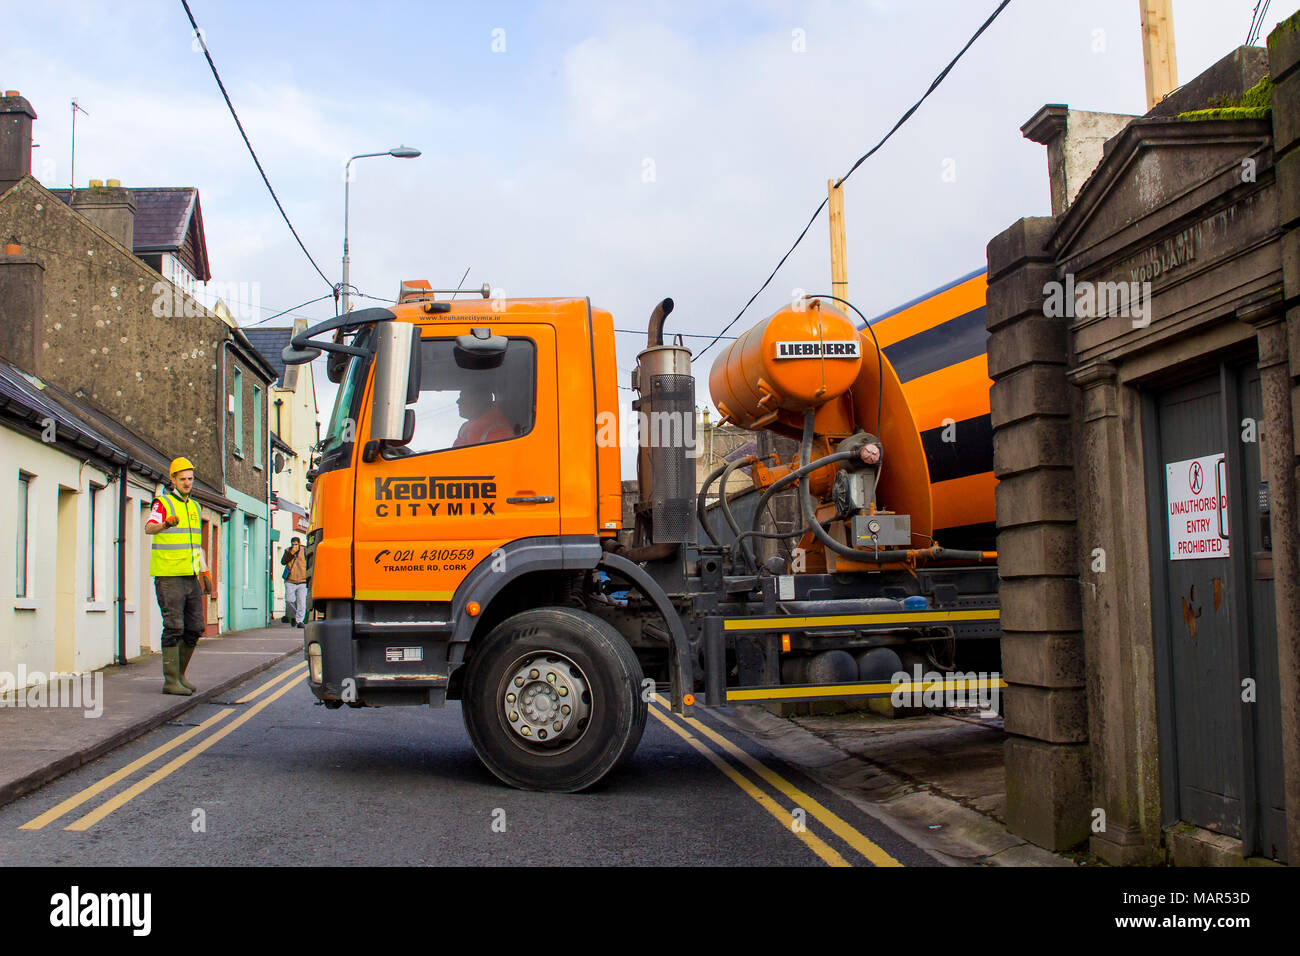 Ein Arbeiter in Hi-Viz Kleidung mit Wegbeschreibungen zu den Fahrer eines Bulk konkrete Lieferung Lastwagen in die Stadt Cork Irland Stockfoto